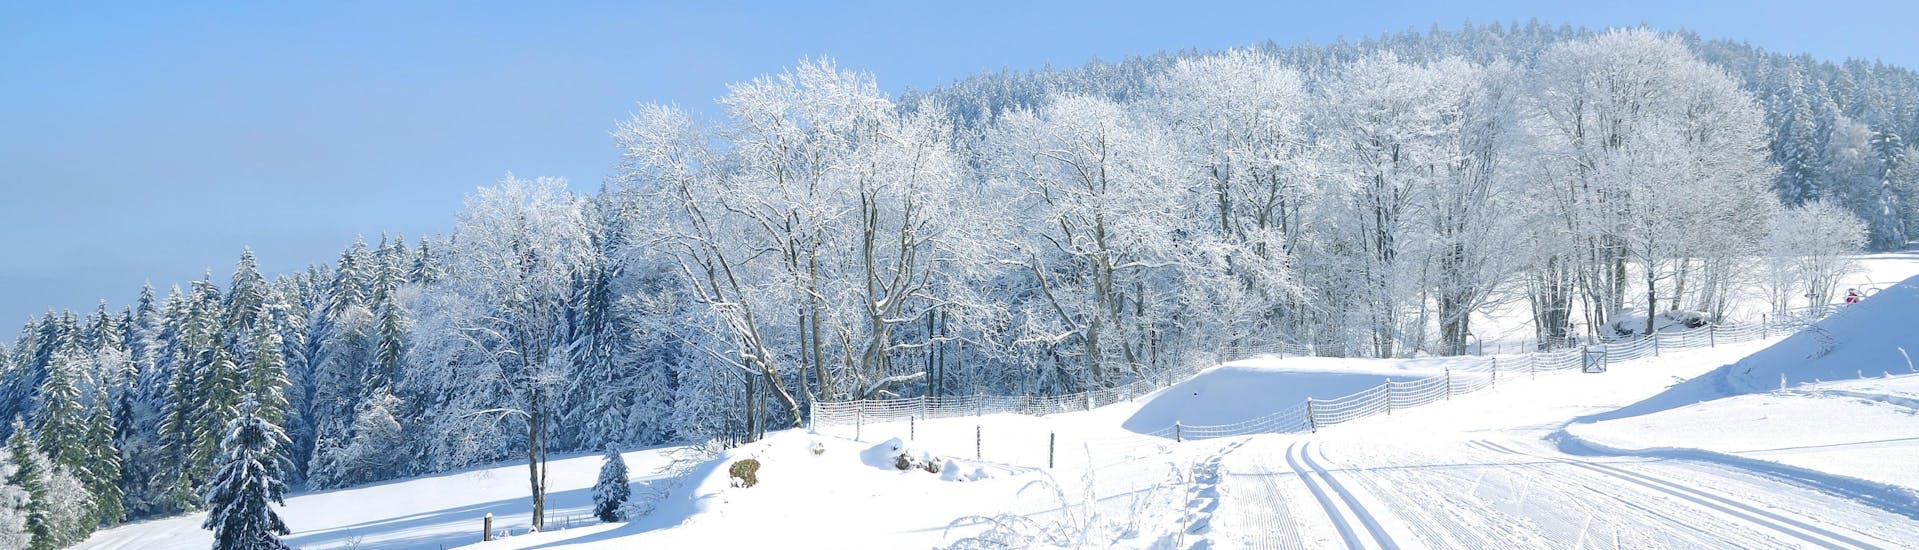 Immagine delle piste di Mitterdorf (Almberg) - Mitterfirmiansreut dove è possibile prenotare lezioni di sci.